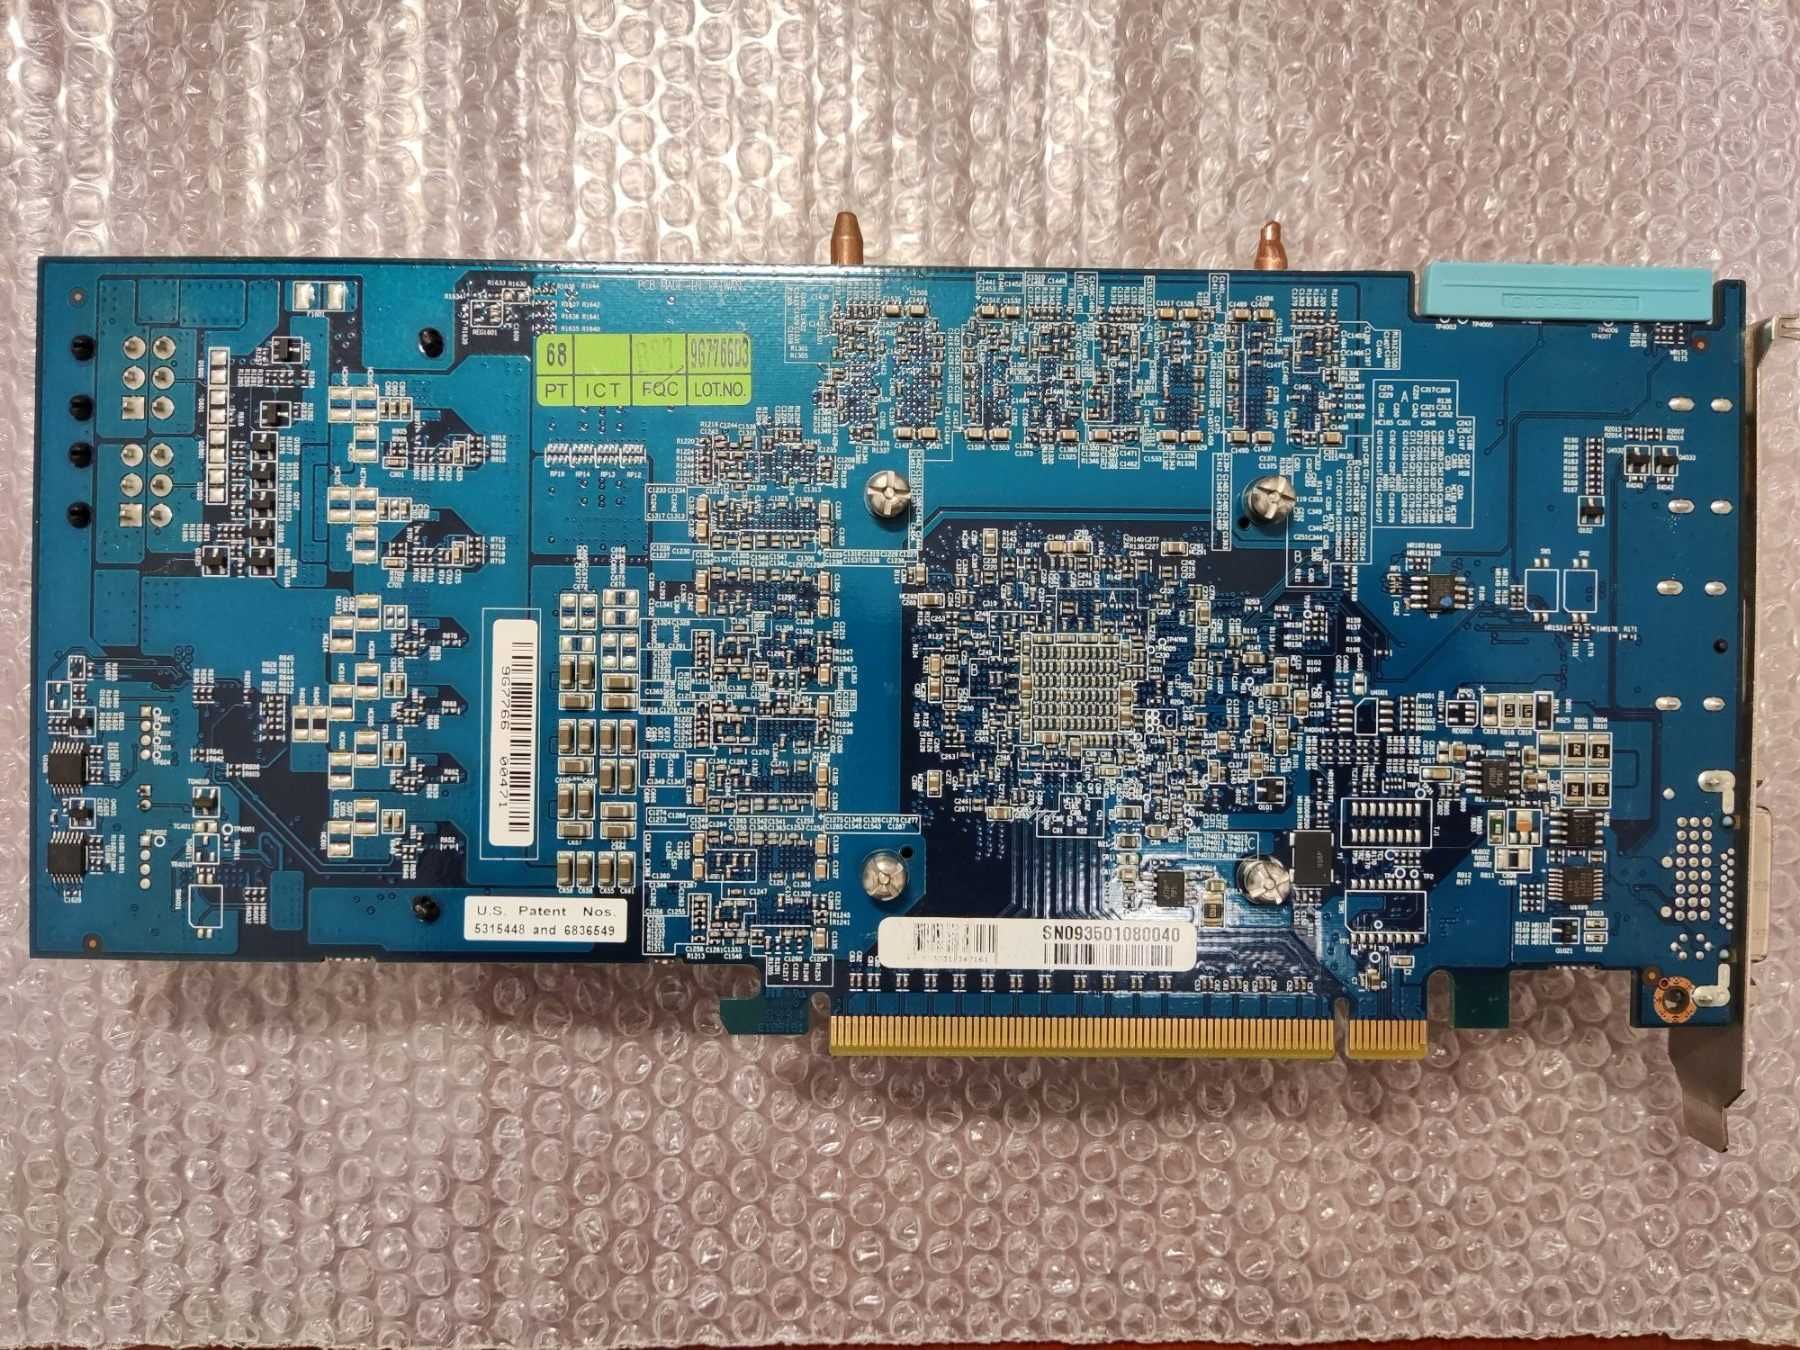 Видеокарта Gigabyte Radeon HD4870 1GB GDDR5 (256bit) (GV-R487D5-1GD)